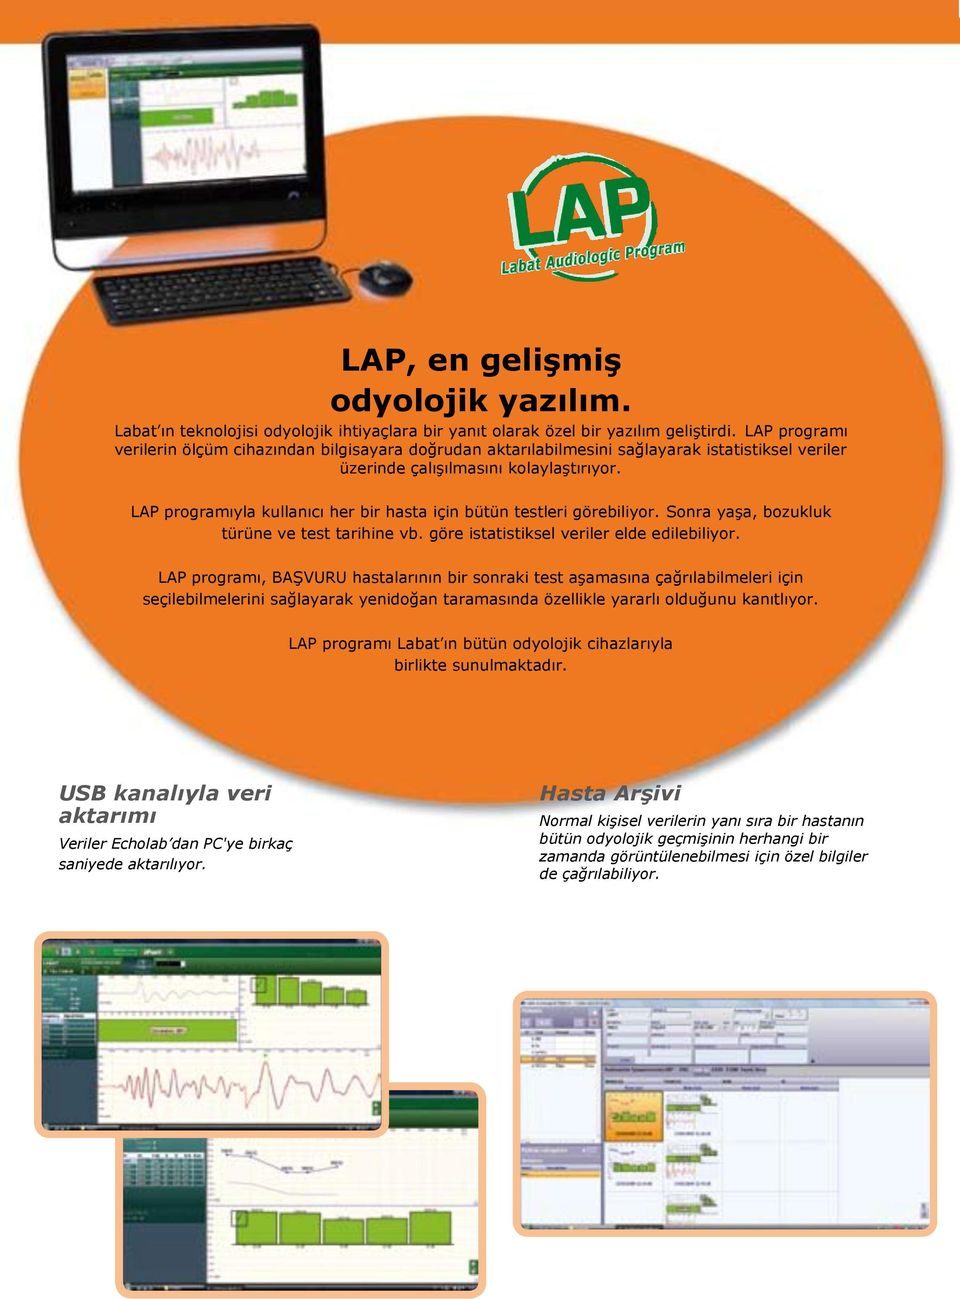 LAP programıyla kullanıcı her bir hasta için bütün testleri görebiliyor. Sonra yaģa, bozukluk türüne ve test tarihine vb. göre istatistiksel veriler elde edilebiliyor.